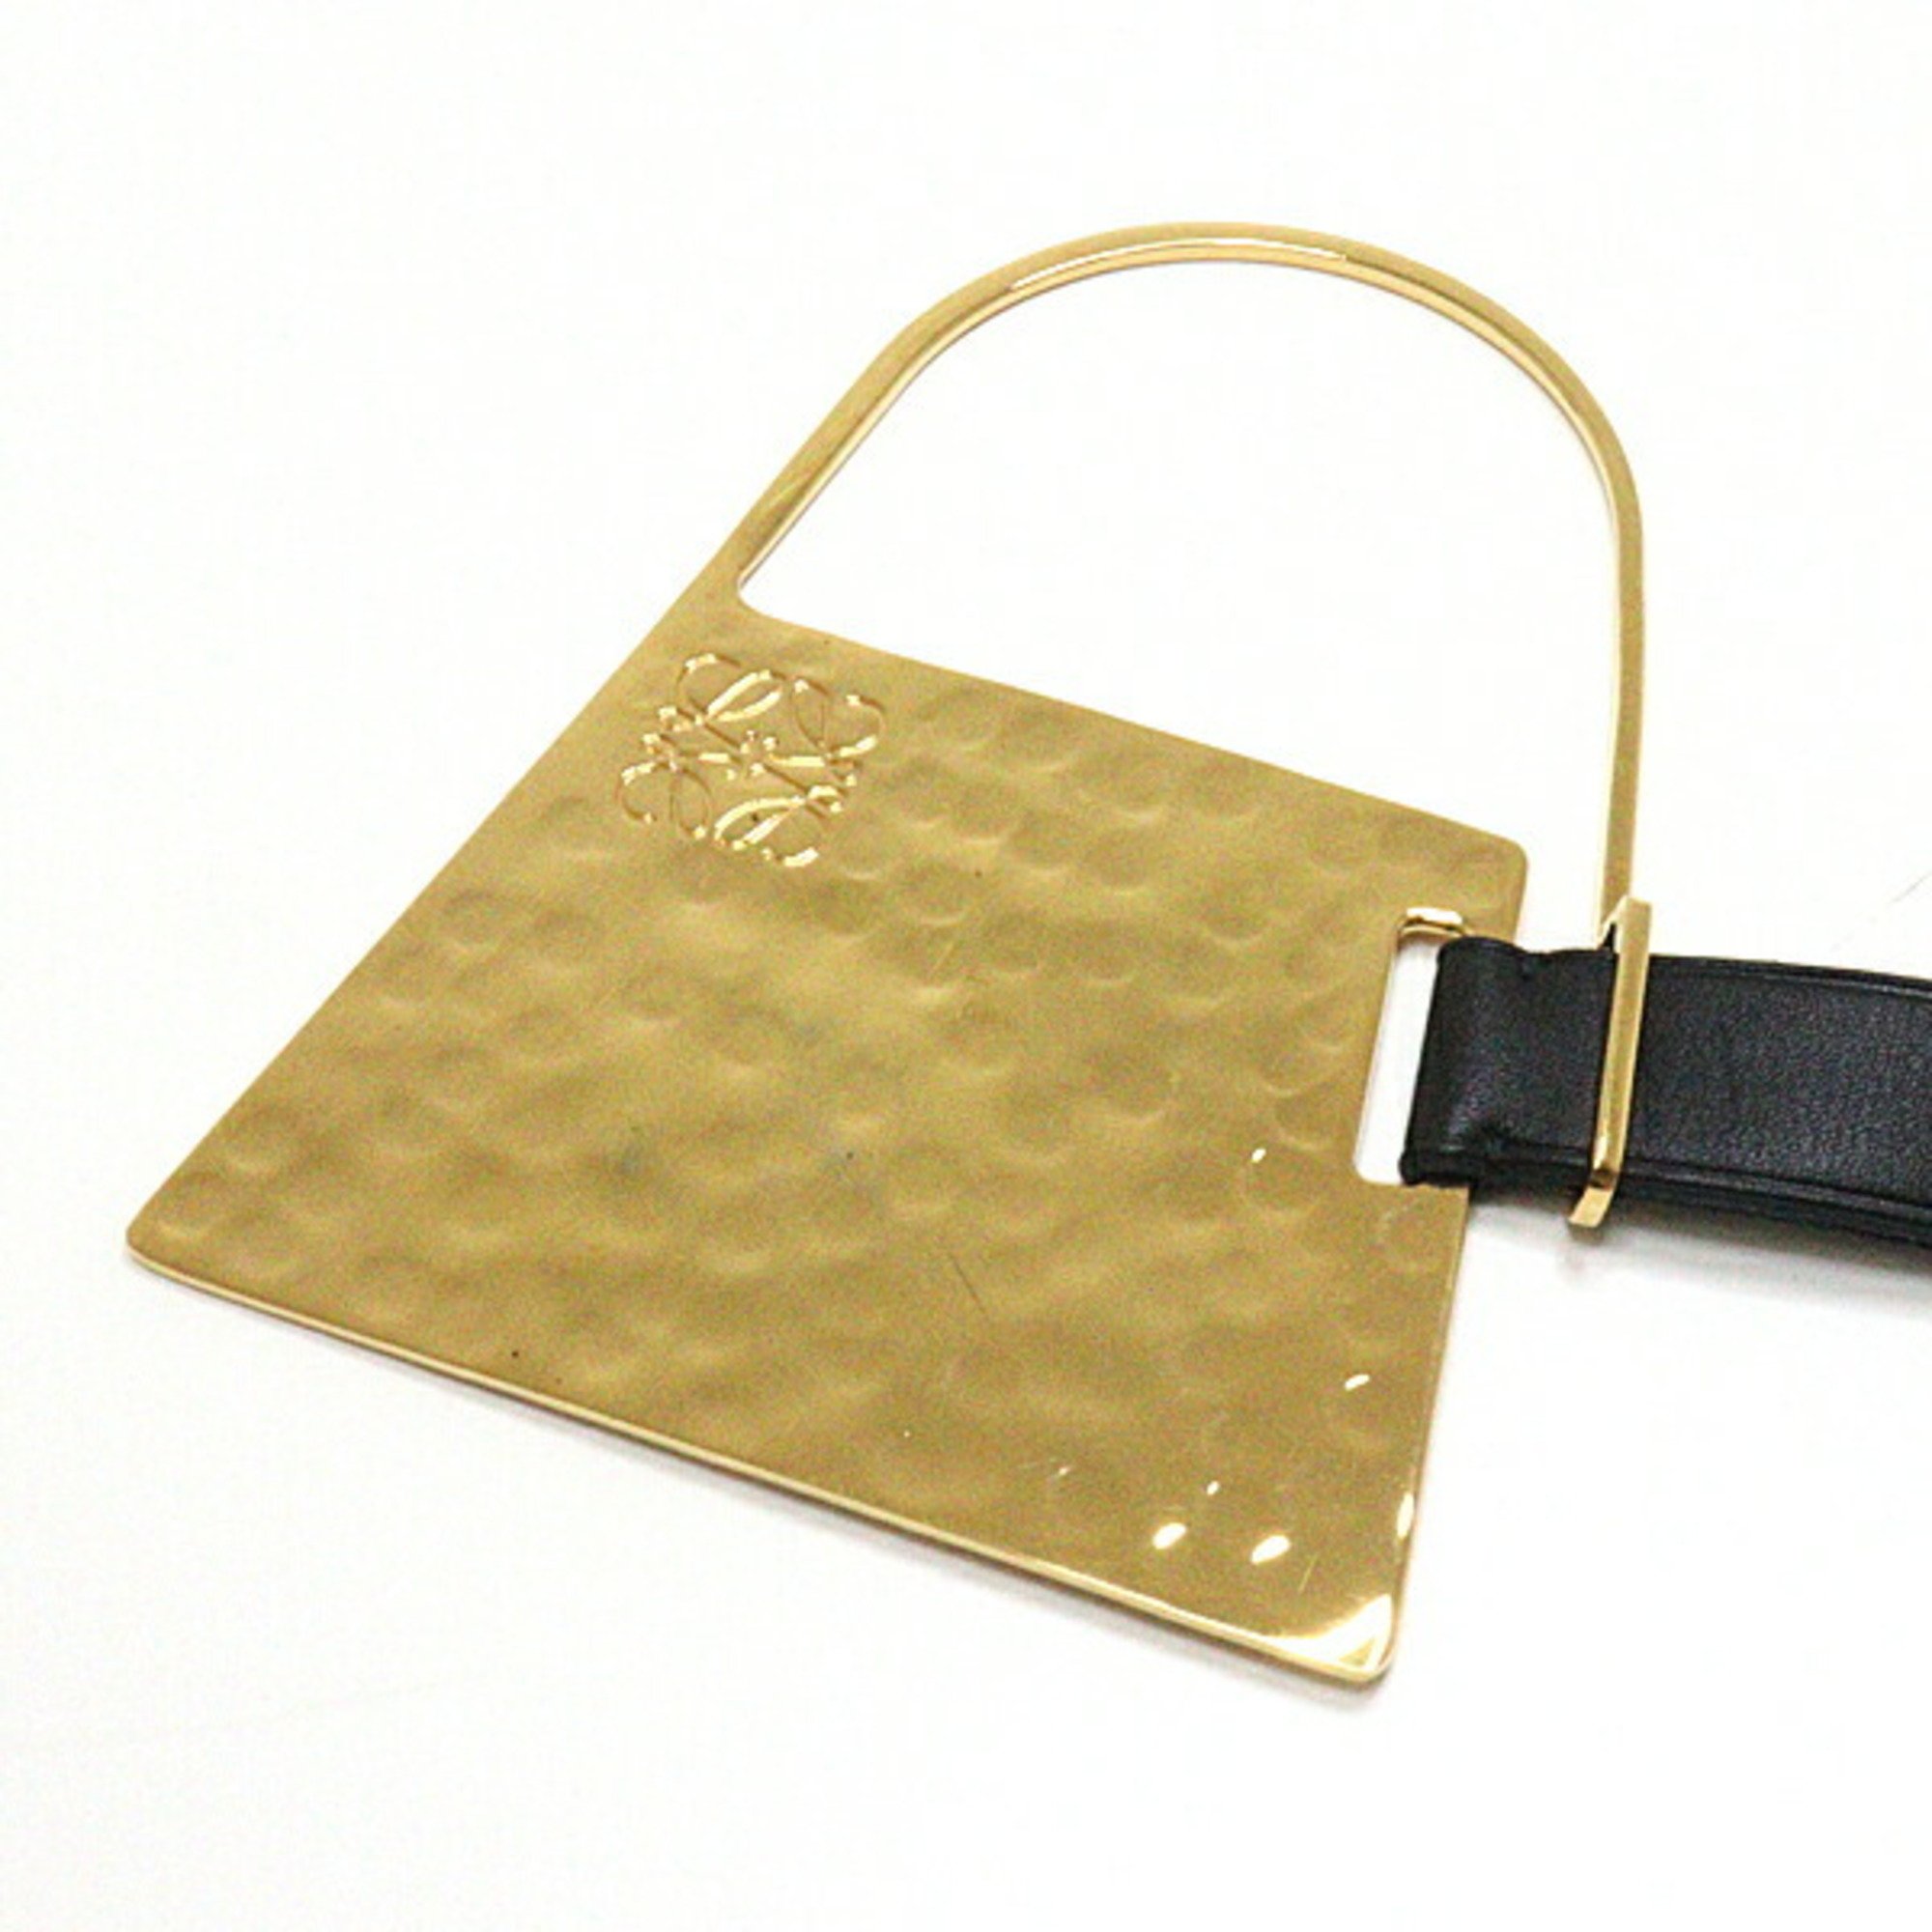 Loewe LOEWE Bag Motif Charm Metal/Leather Gold/Black Anagram